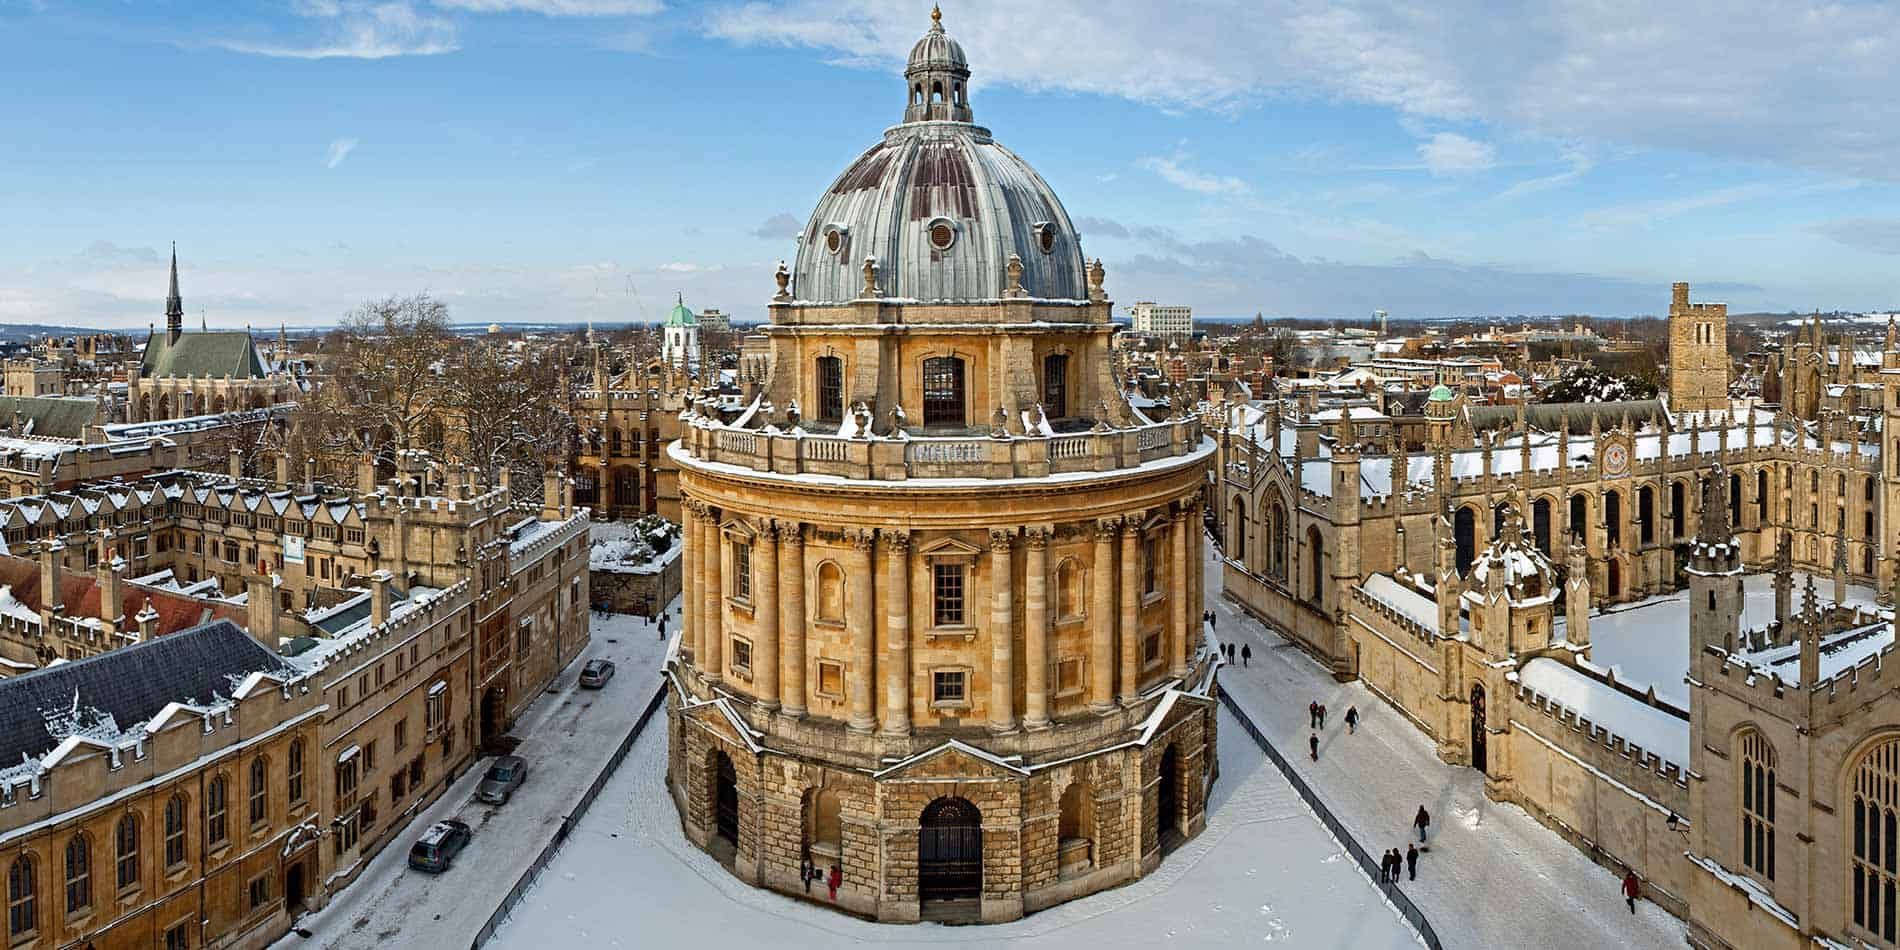 Greene’s College Oxford